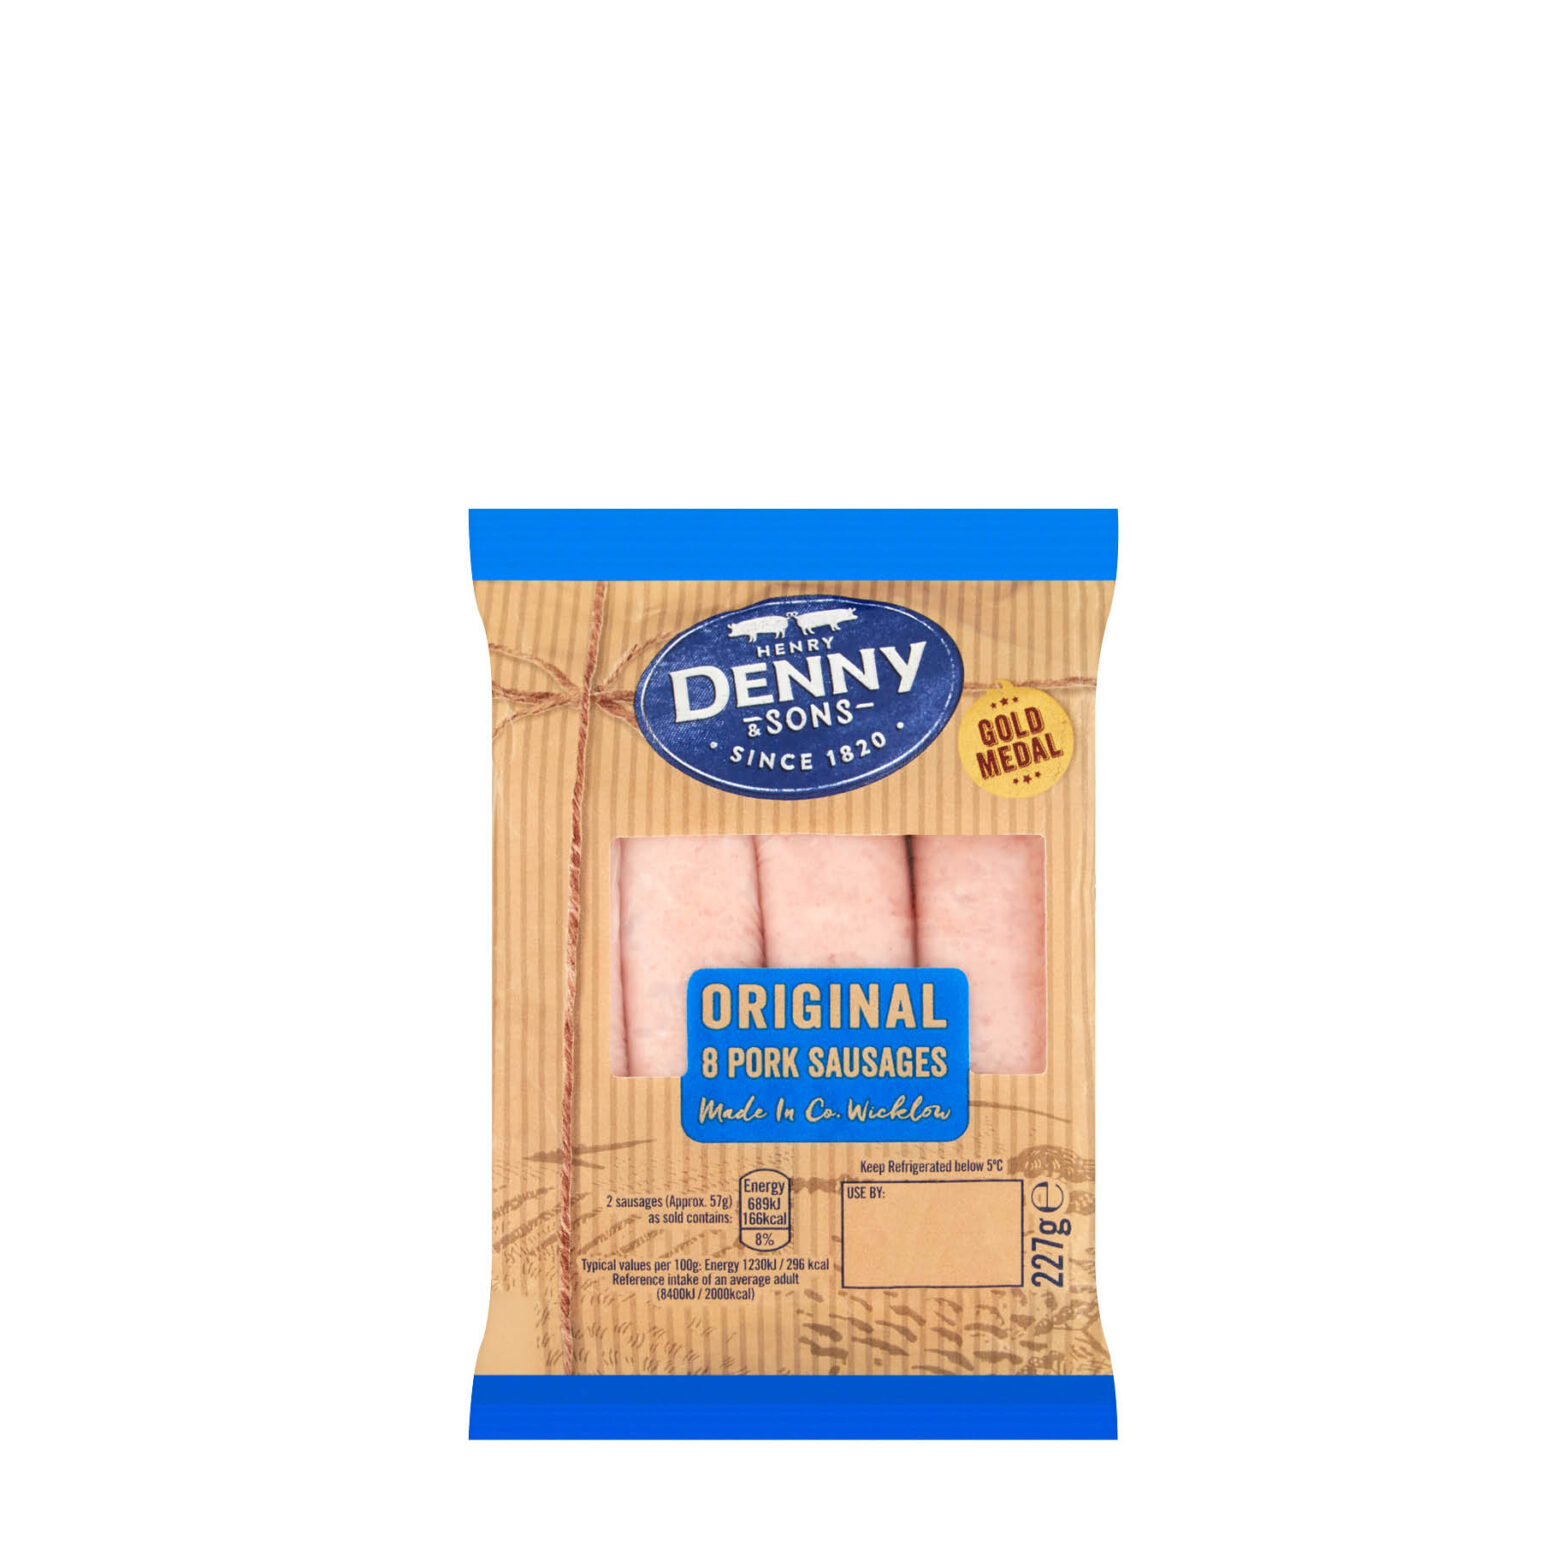 Denny Gold Medal Original Pork Sausages 8 Pack